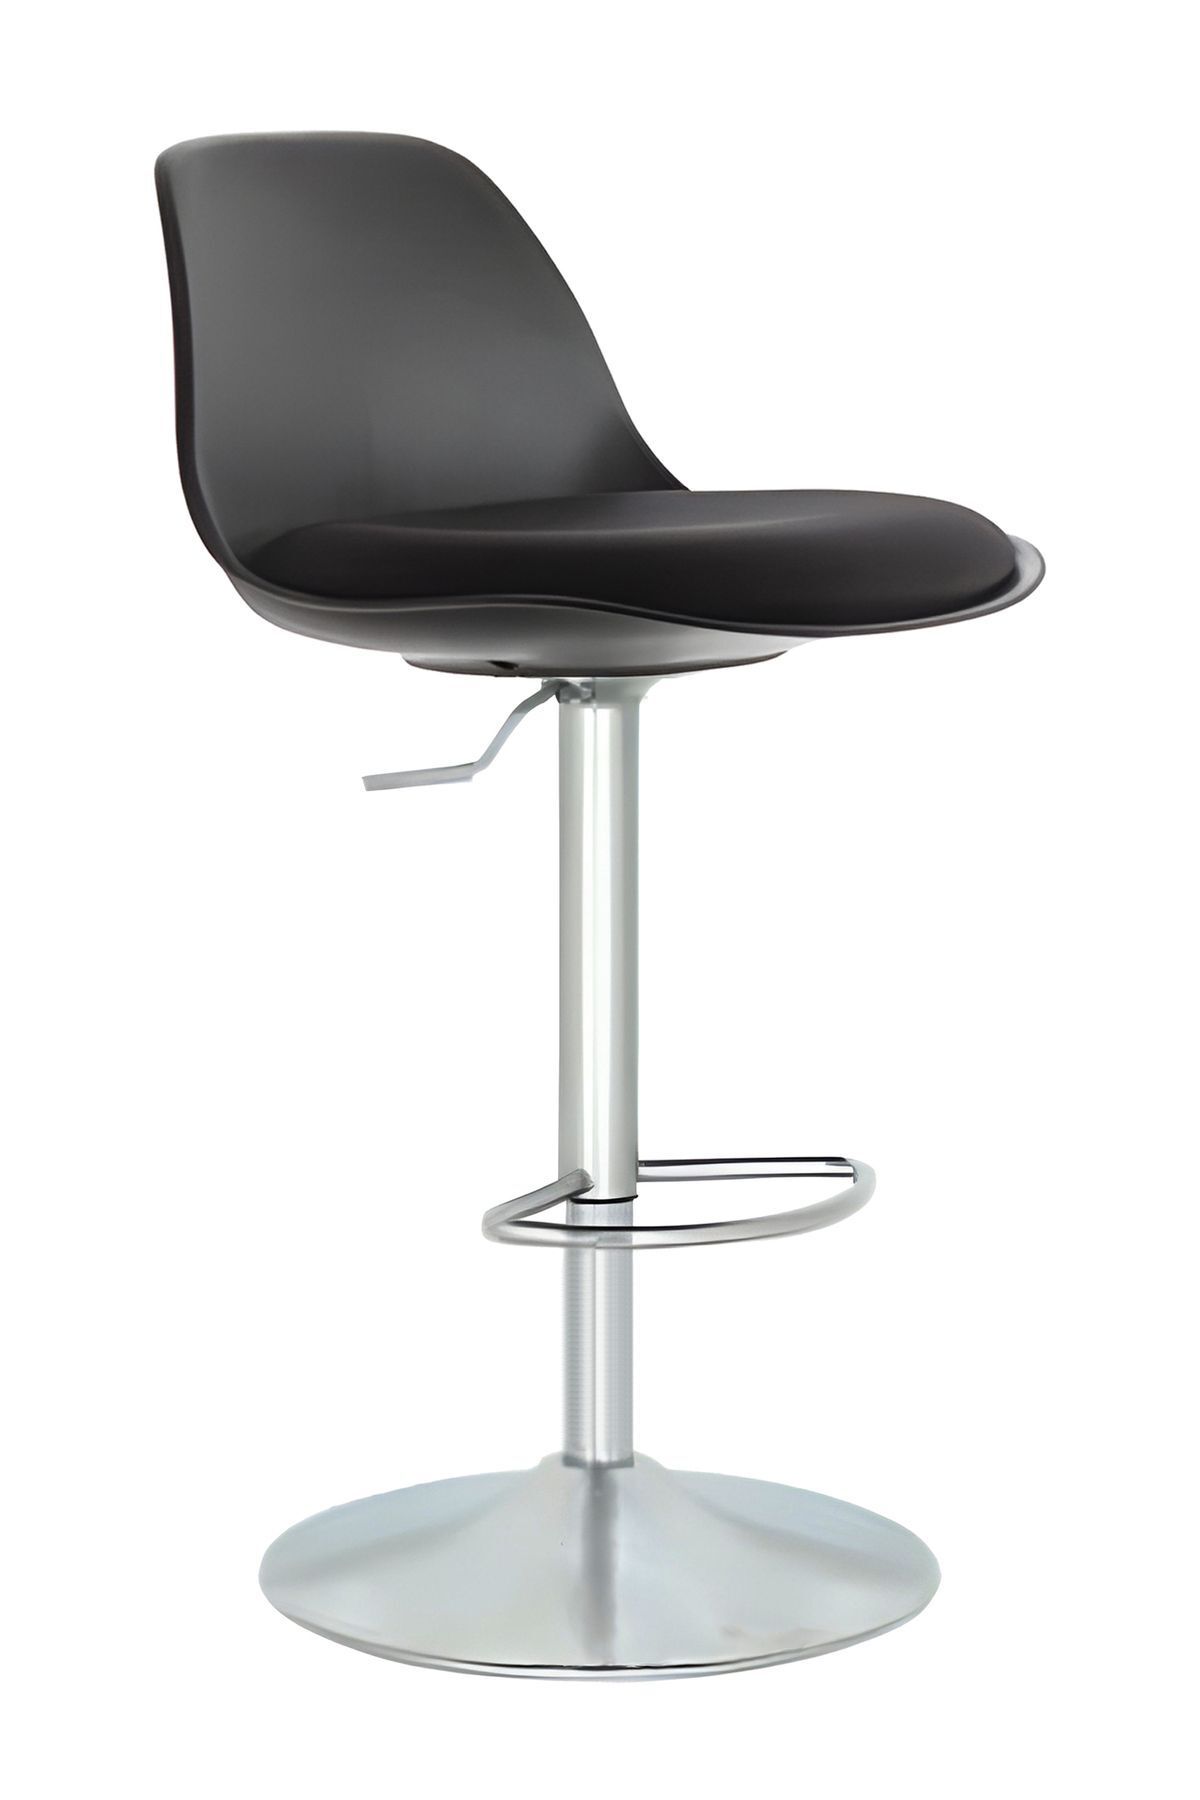 Bürocci Nadya Bar Sandalyesi - Siyah Deri - Metal Ayaklı Bar Taburesi - 9537s0101